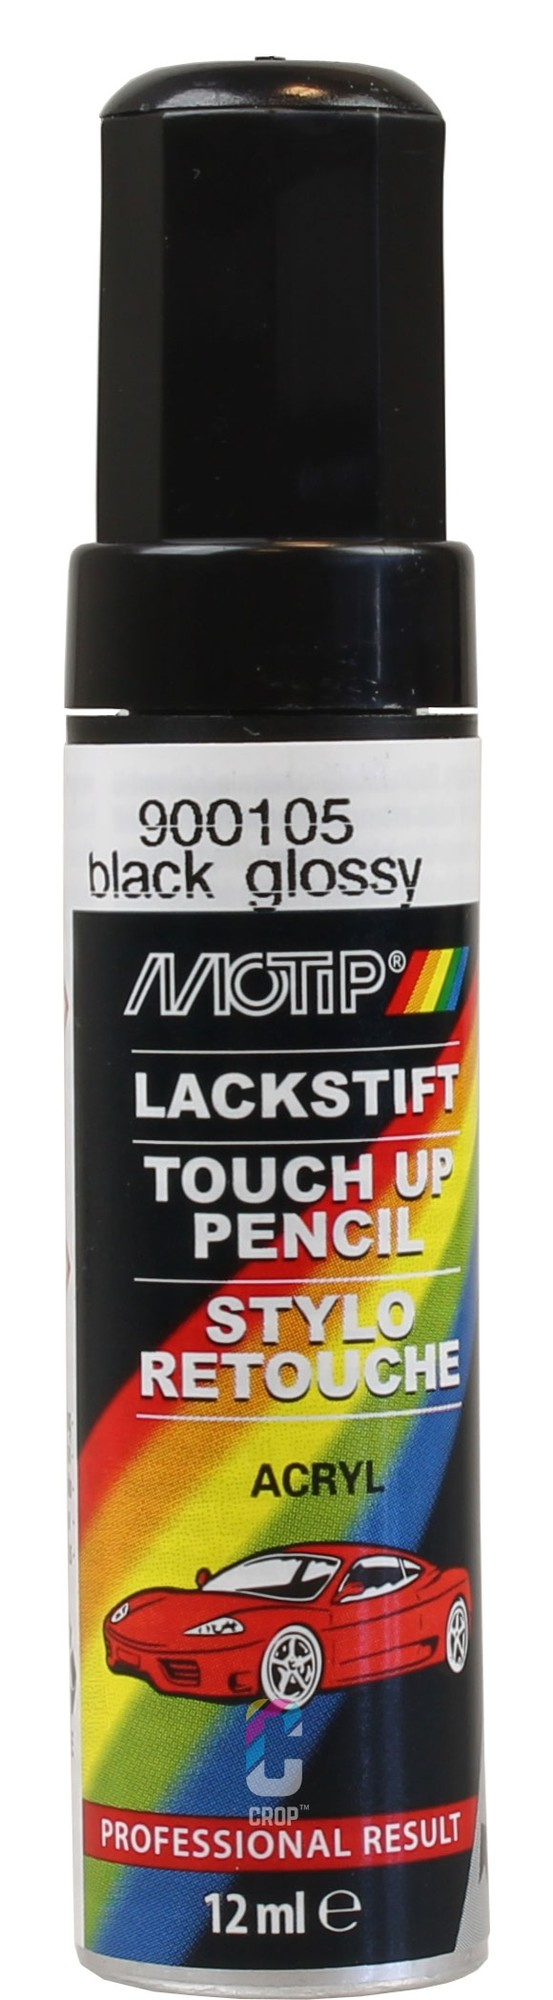 Lackstift Schwarz Glänzend, Pinsel und Stift in einem für präzise